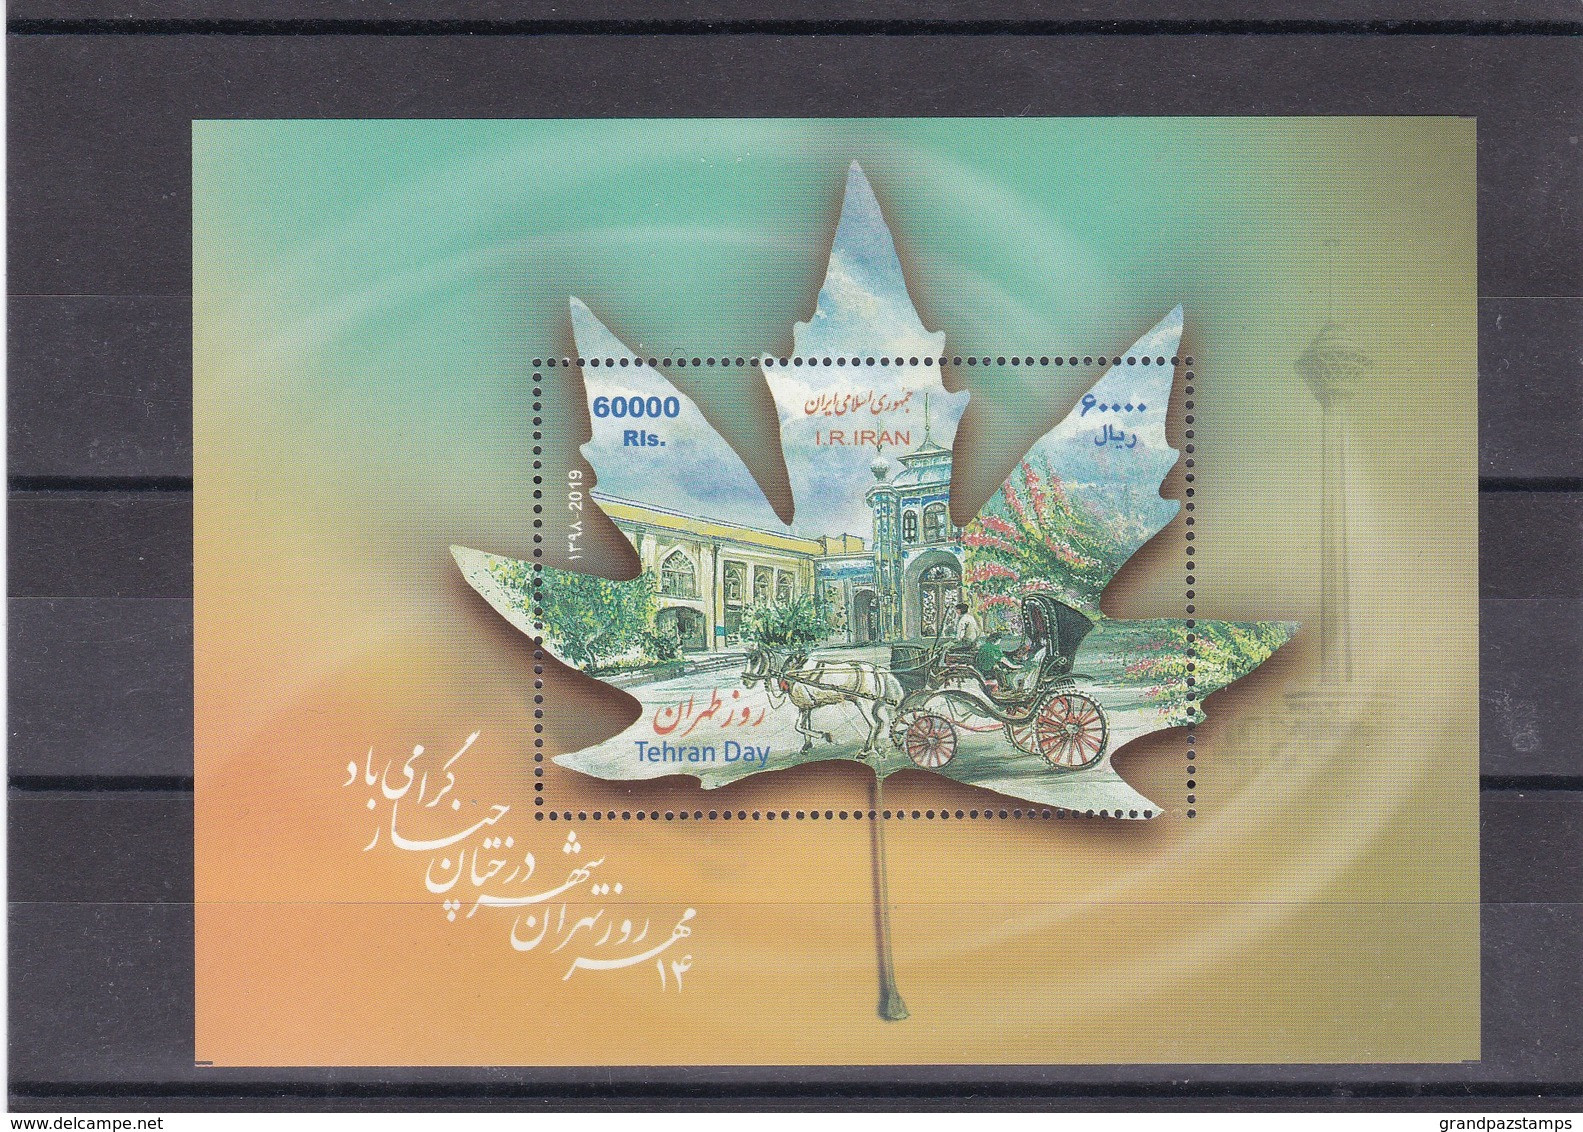 Iran 2019  Tehran Day Souvenir Sheet  MNH - Iran